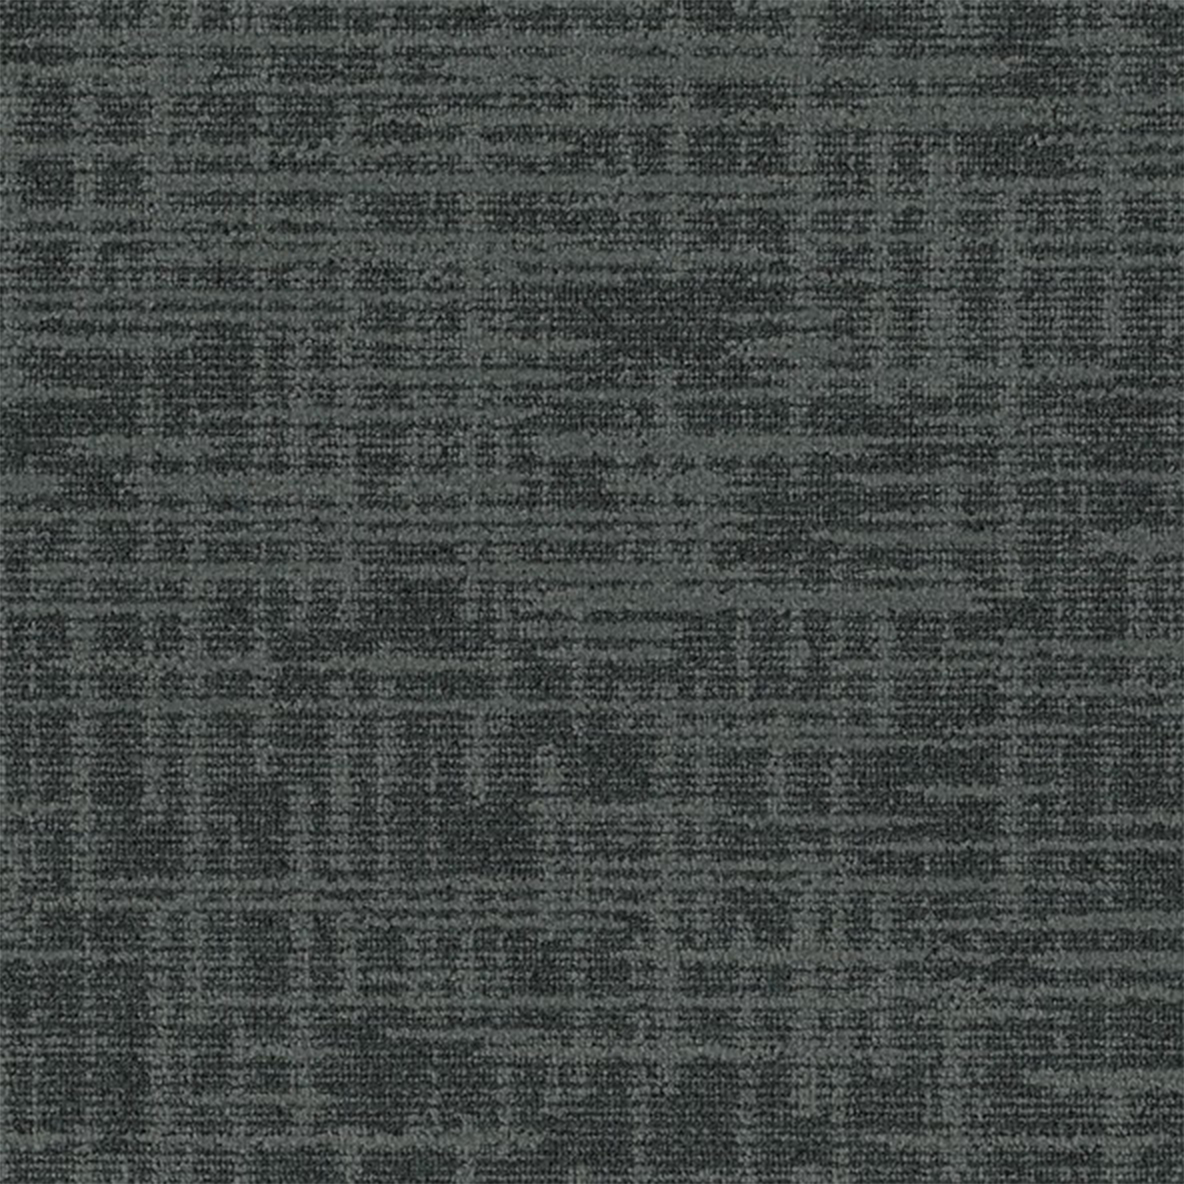 Leaden color close up Outer Banks Commercial Carpet Tile .32 Inch x 50x50 cm per Tile